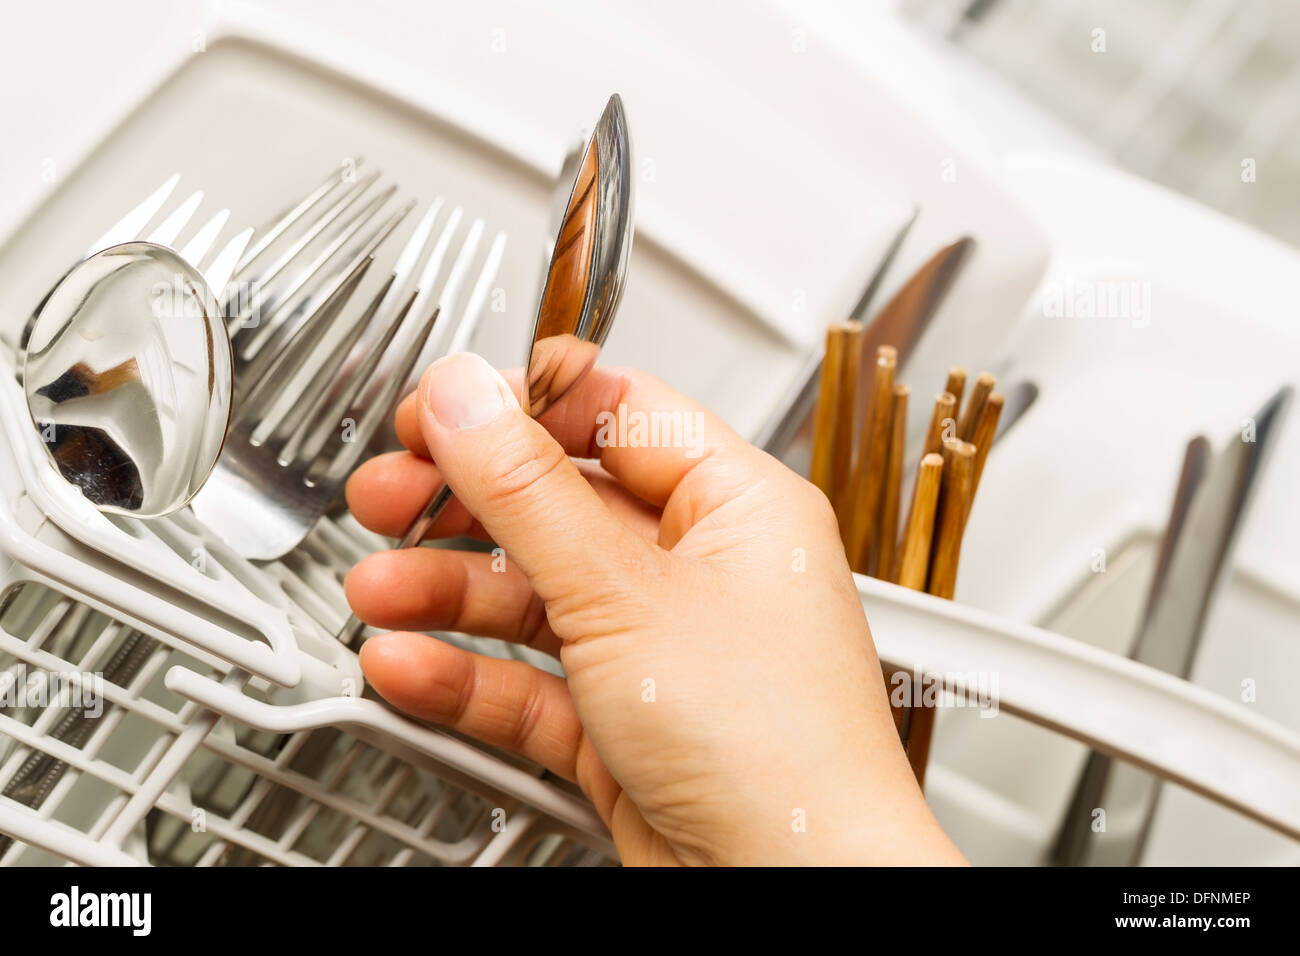 Main de femme de photo horizontale en acier inoxydable cuillère pour l'examen de la propreté lave-vaisselle Banque D'Images